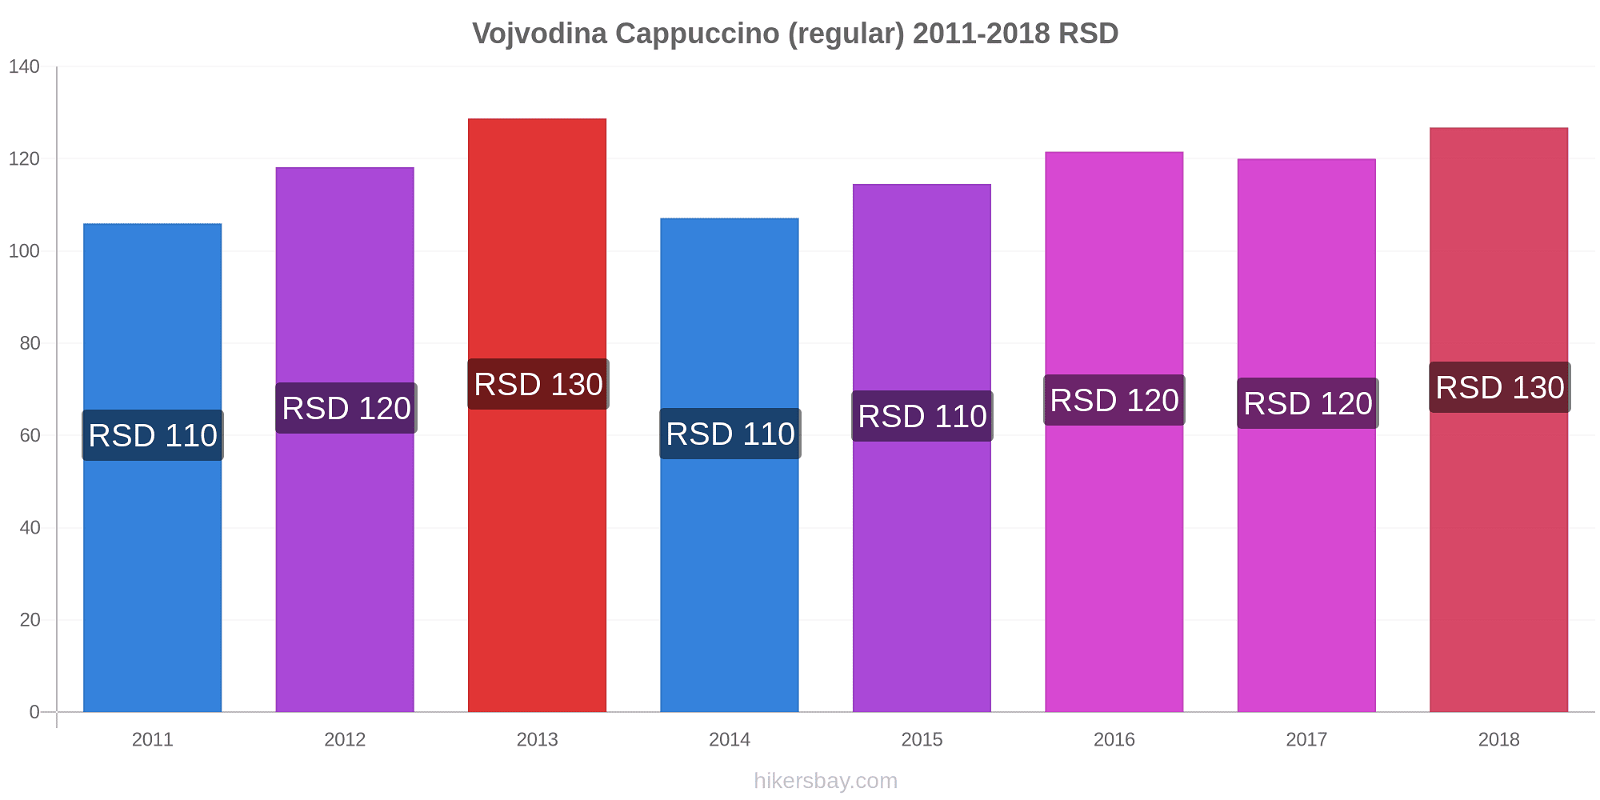 Vojvodina price changes Cappuccino (regular) hikersbay.com